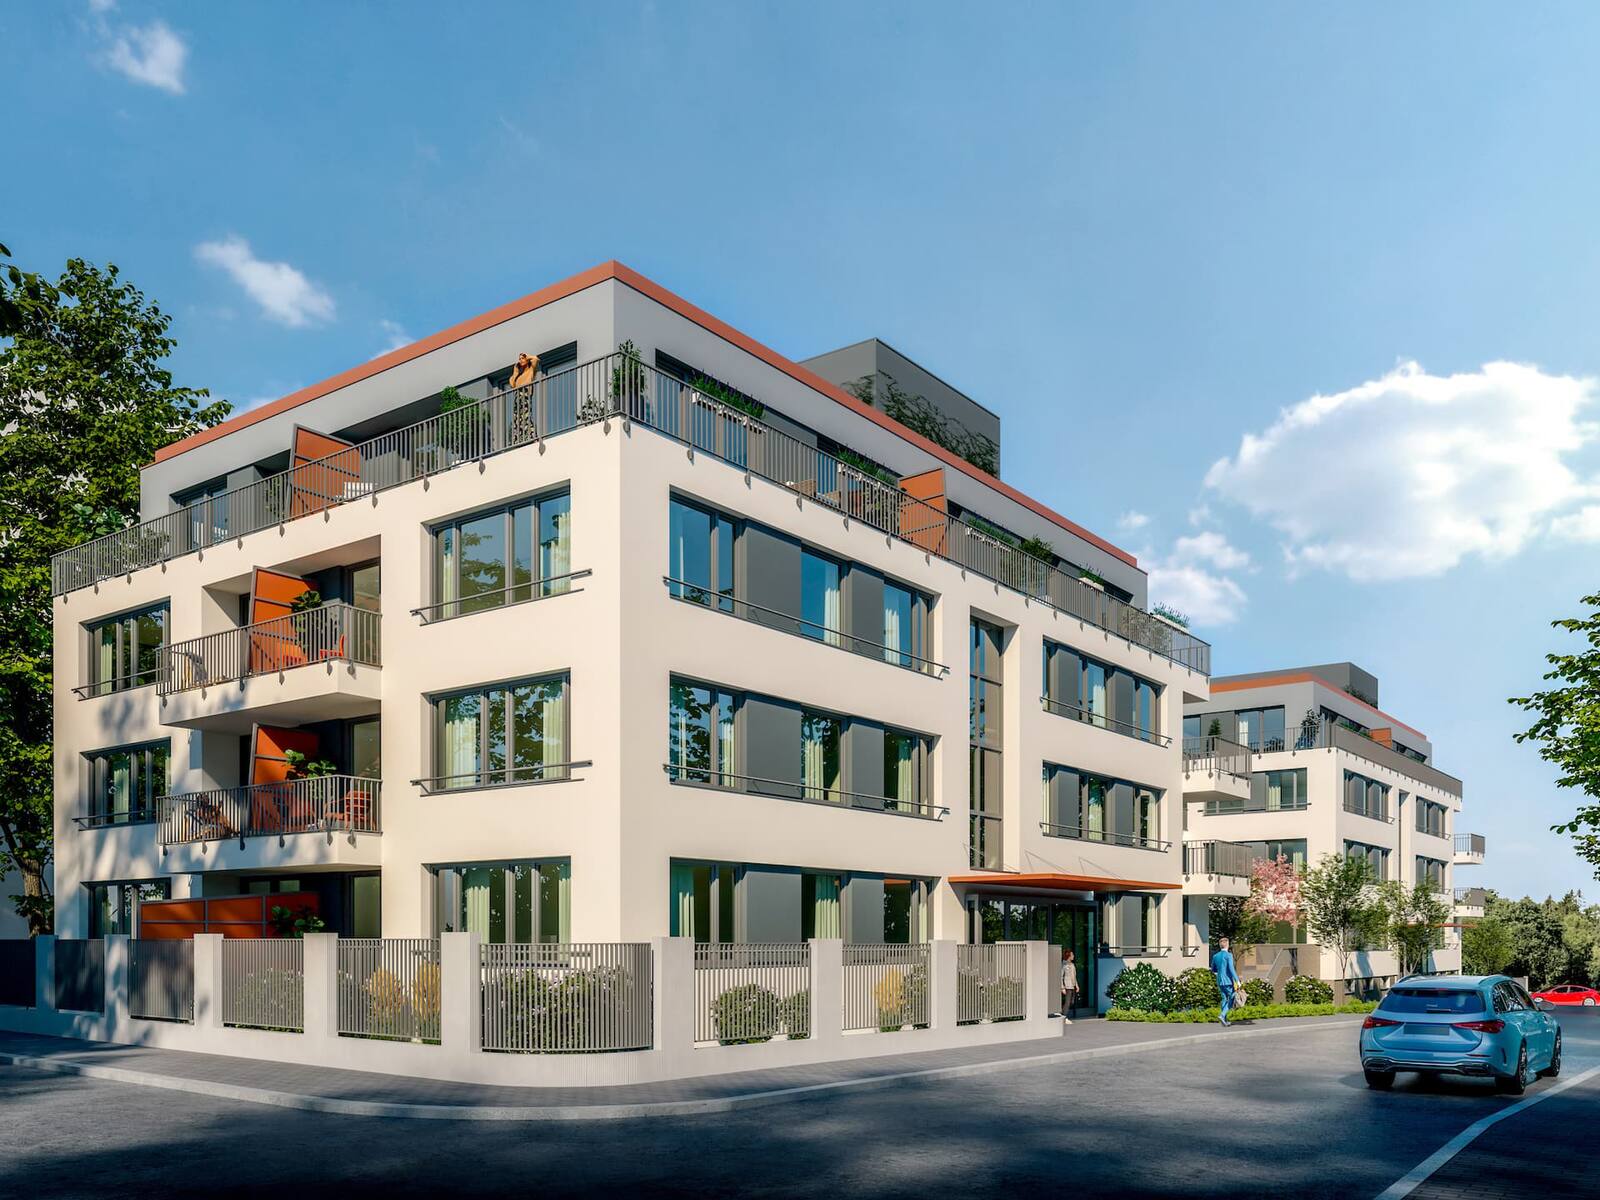 Benkova Rezidence<br>Komorní projekt dvou bytových domů ve vilové čtvrti pražského Chodova s nebývale dobrou občanskou vybaveností v pěší dostupnosti